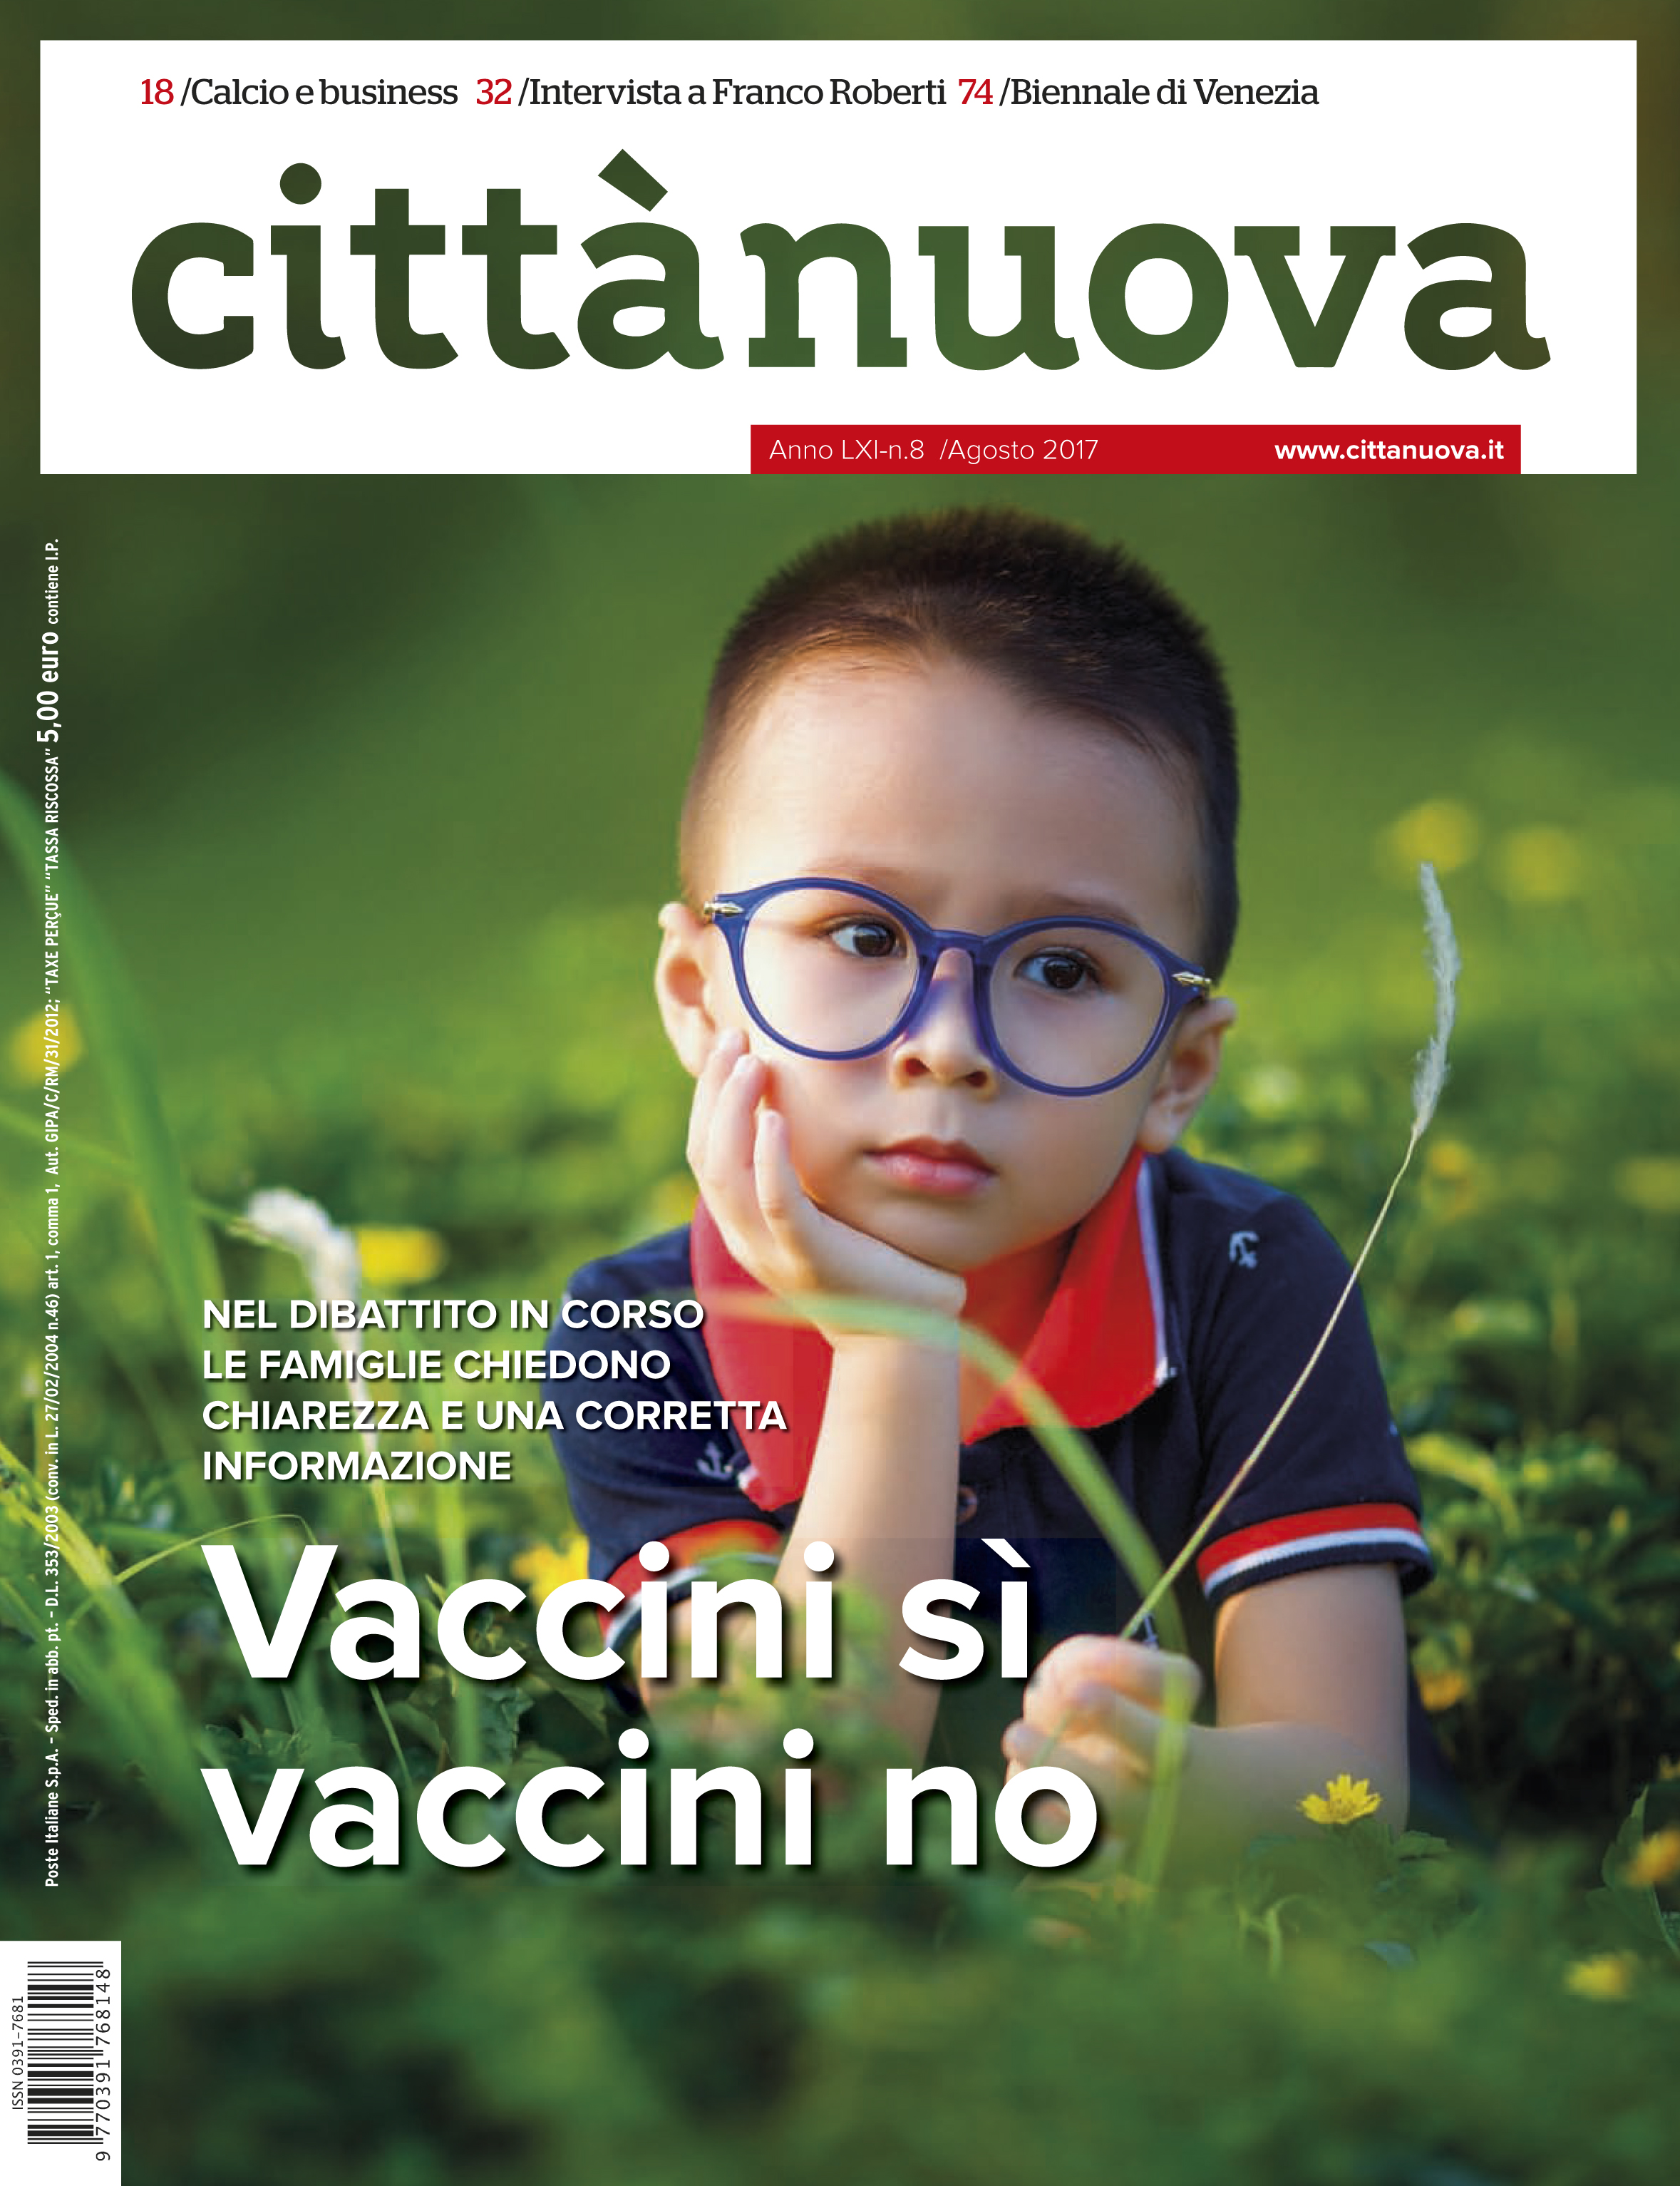 Vaccini sì vaccini no - Città Nuova - Città Nuova